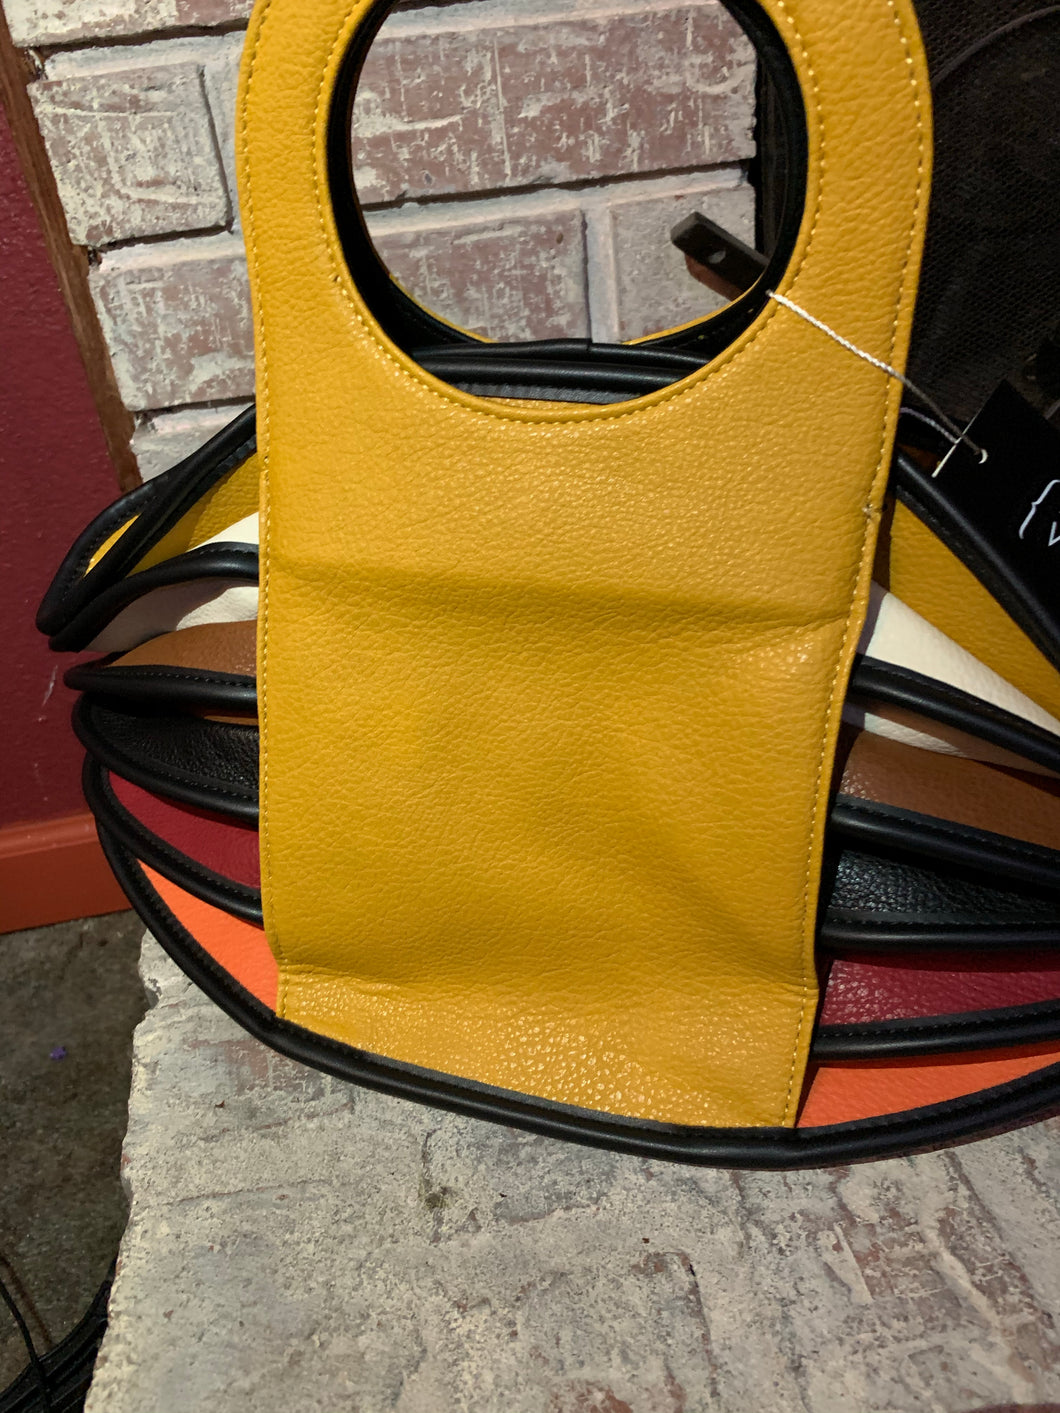 Multicolor purse